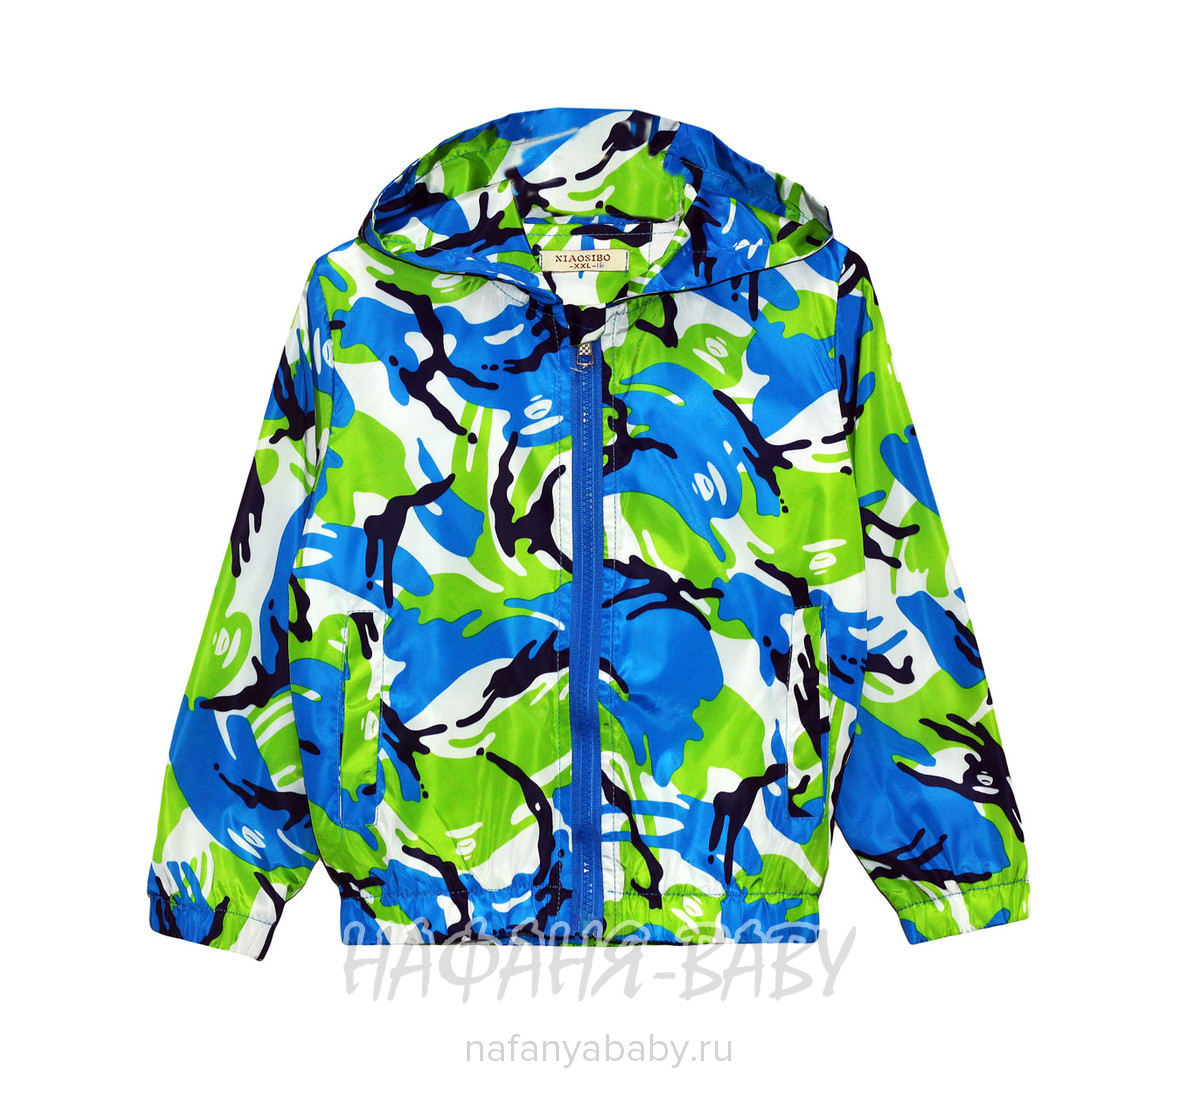 Детская куртка-ветровка XIAO SIBO, купить в интернет магазине Нафаня. арт: 546.